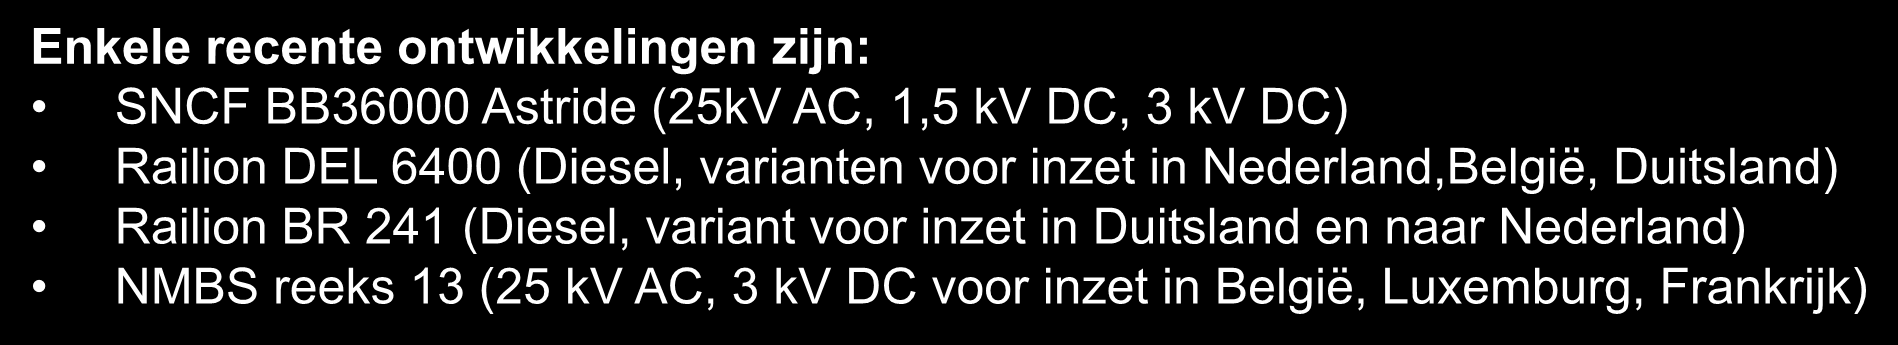 (Diesel, variant voor inzet in Duitsland en naar Nederland) NMBS reeks 13 (25 kv AC, 3 kv DC voor